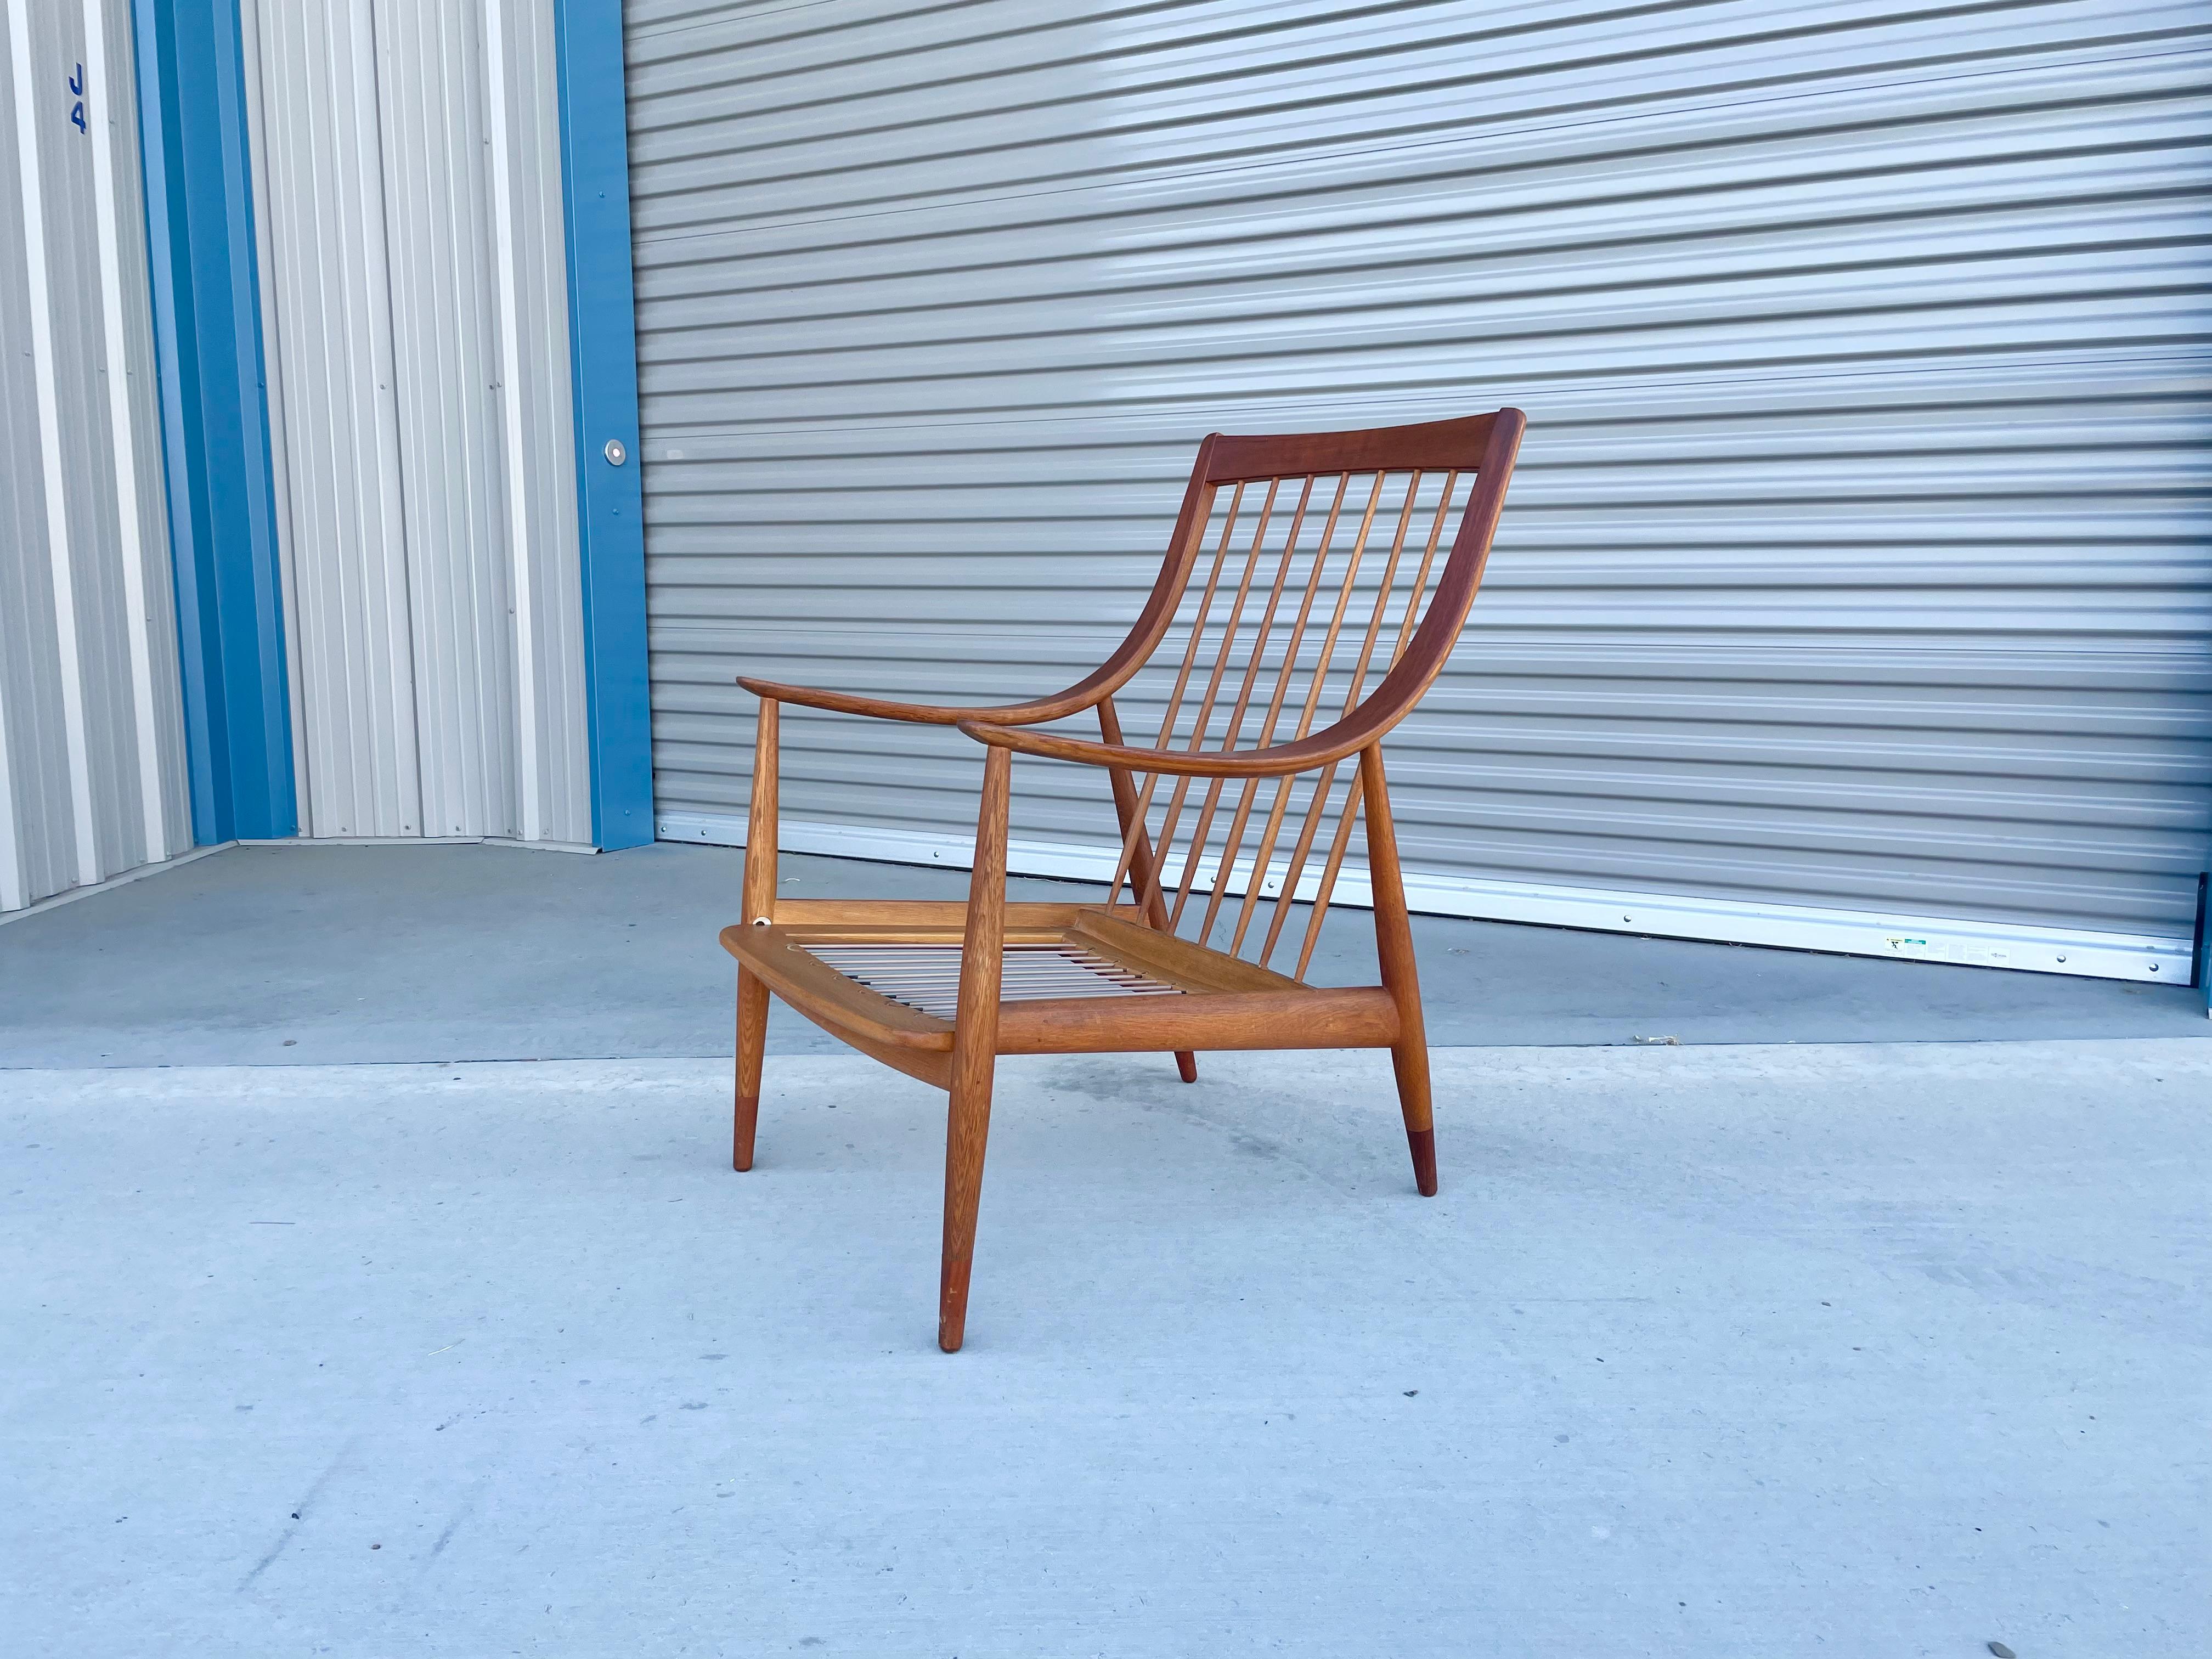 Schöner Sessel von Peter Hvidt & Orla Mølgaard-Nielsen für France & Daverkosen aus Dänemark, ca. 1950er Jahre. Dieser atemberaubende Stuhl wurde aus hochwertigem Teakholz gefertigt. Der Stuhl verfügt über geschwungene Armlehnen aus laminiertem